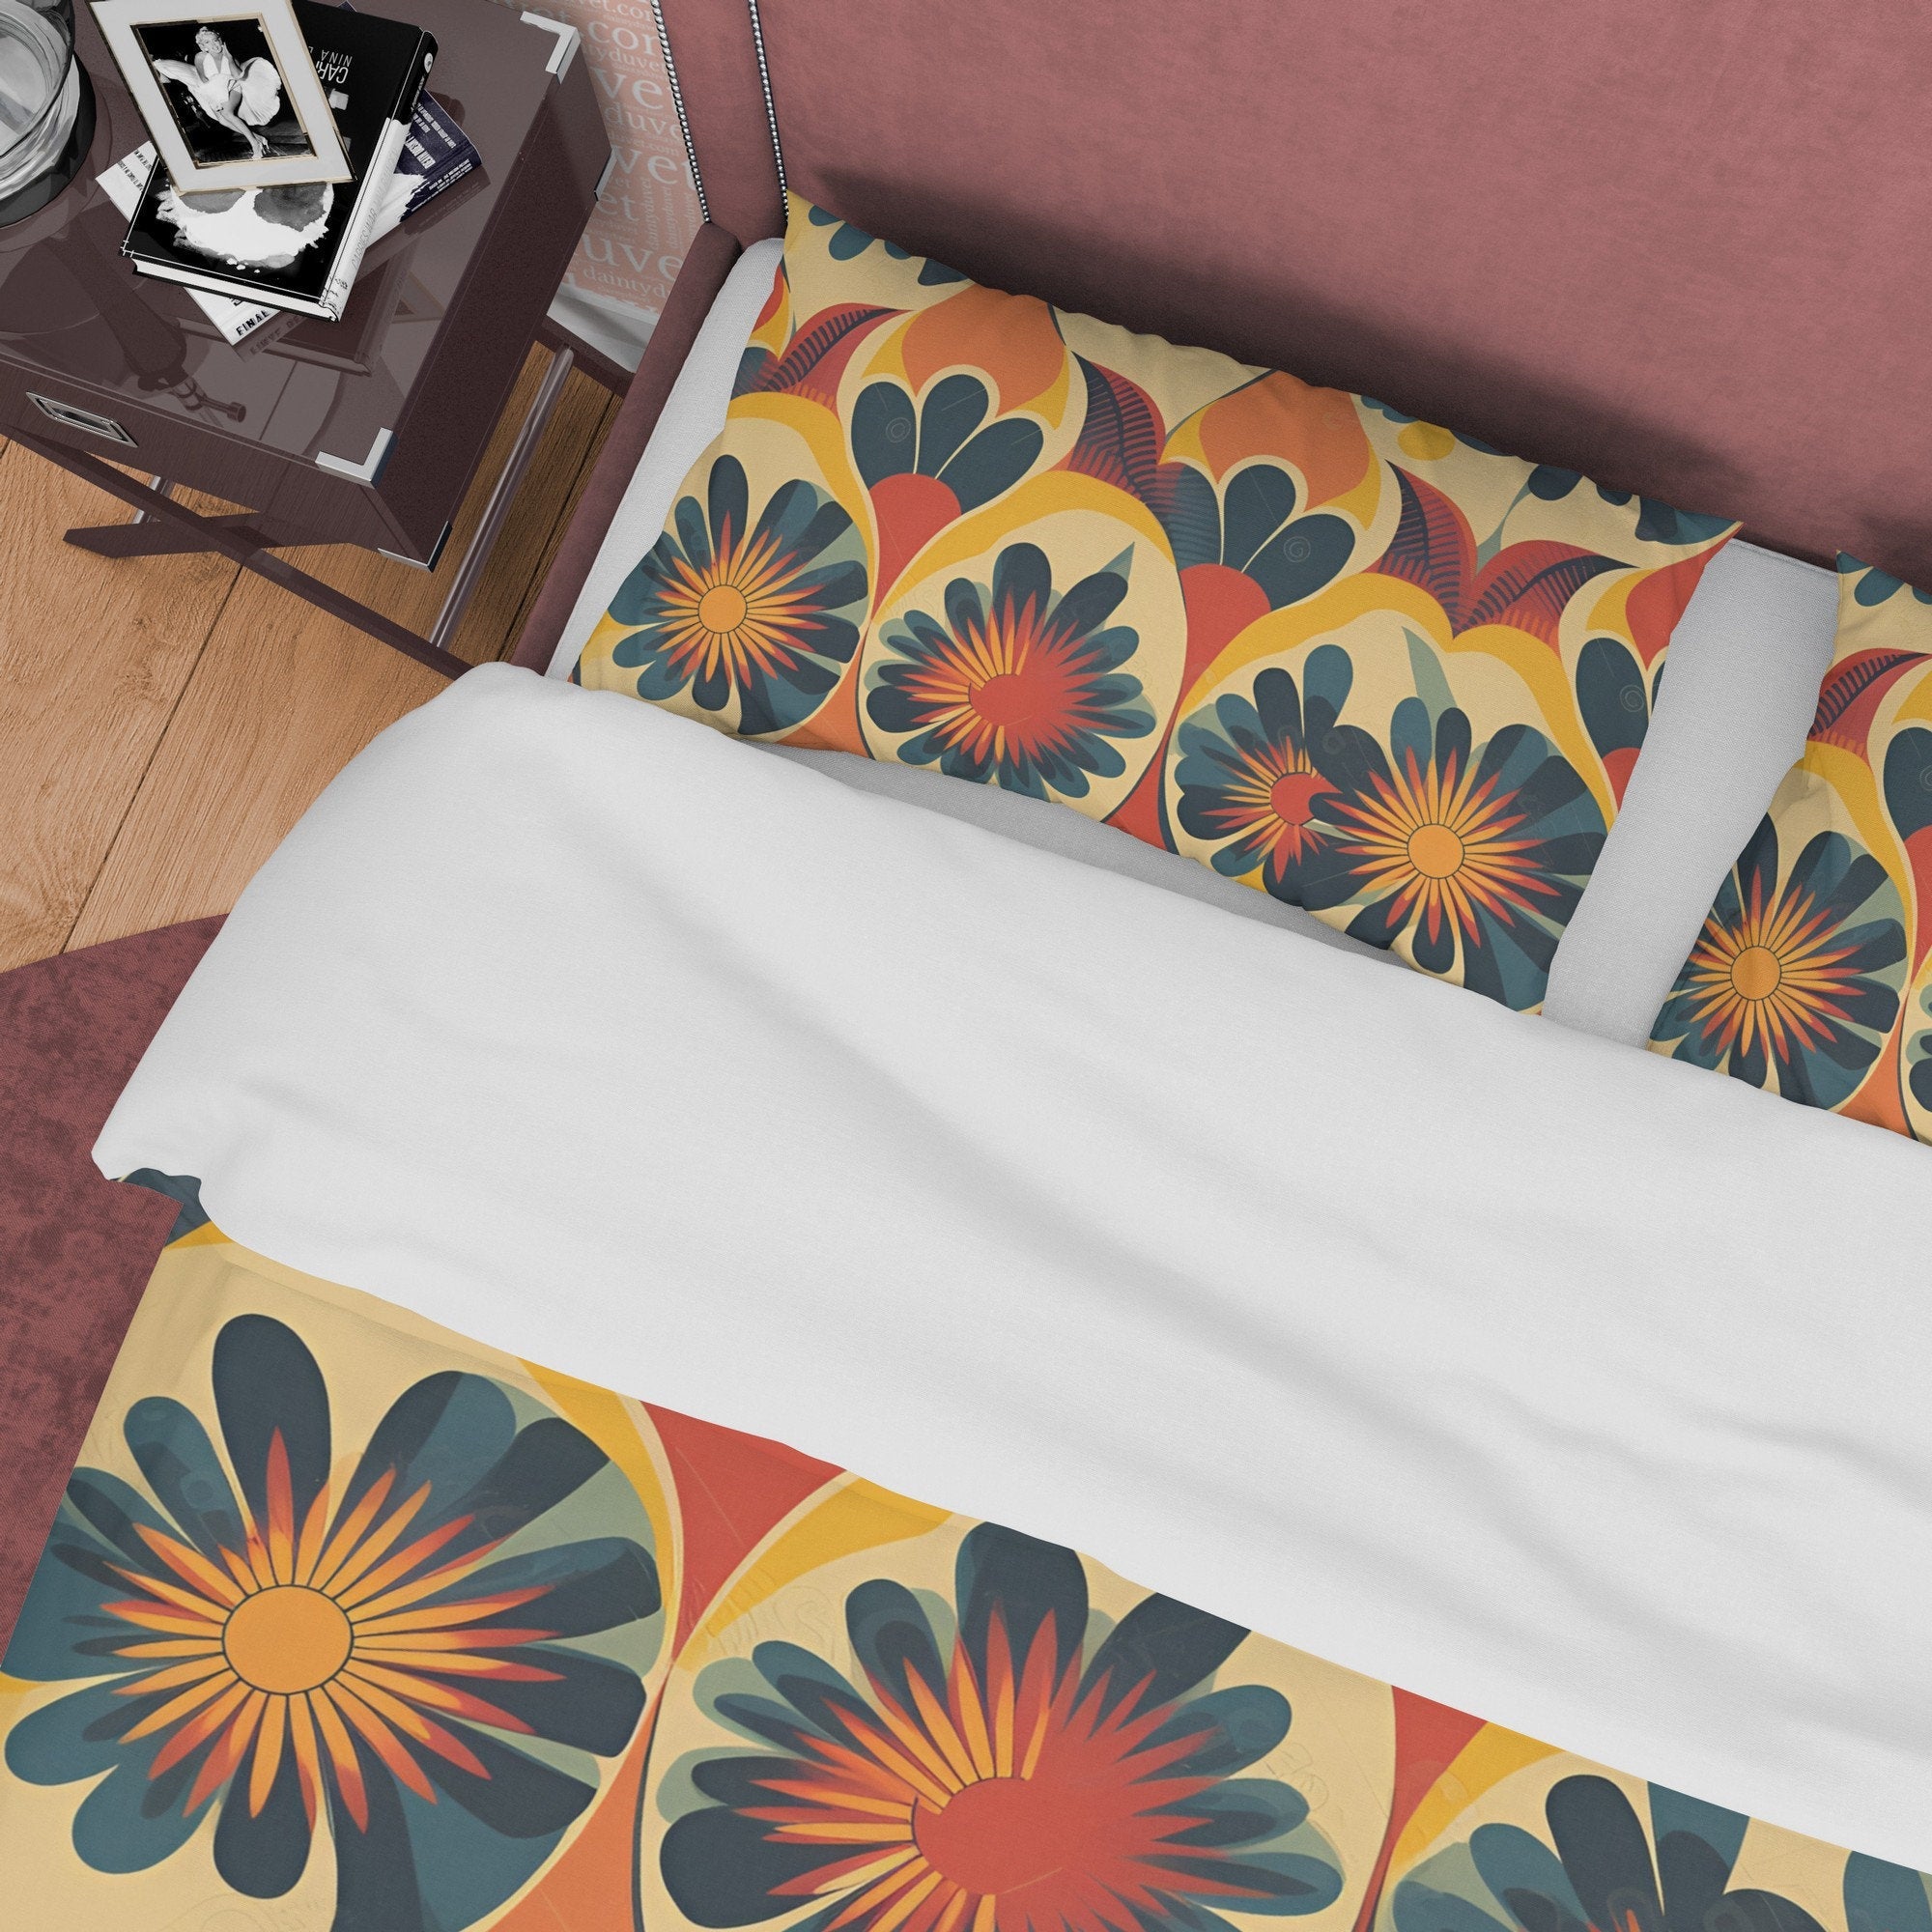 Floral Rustic Retro Bedding Set, Vintage Summer Duvet Cover, Boho Orange Brown Flower Quilt Cover, 70's Pattern Bed Cover, Zipper Bedding